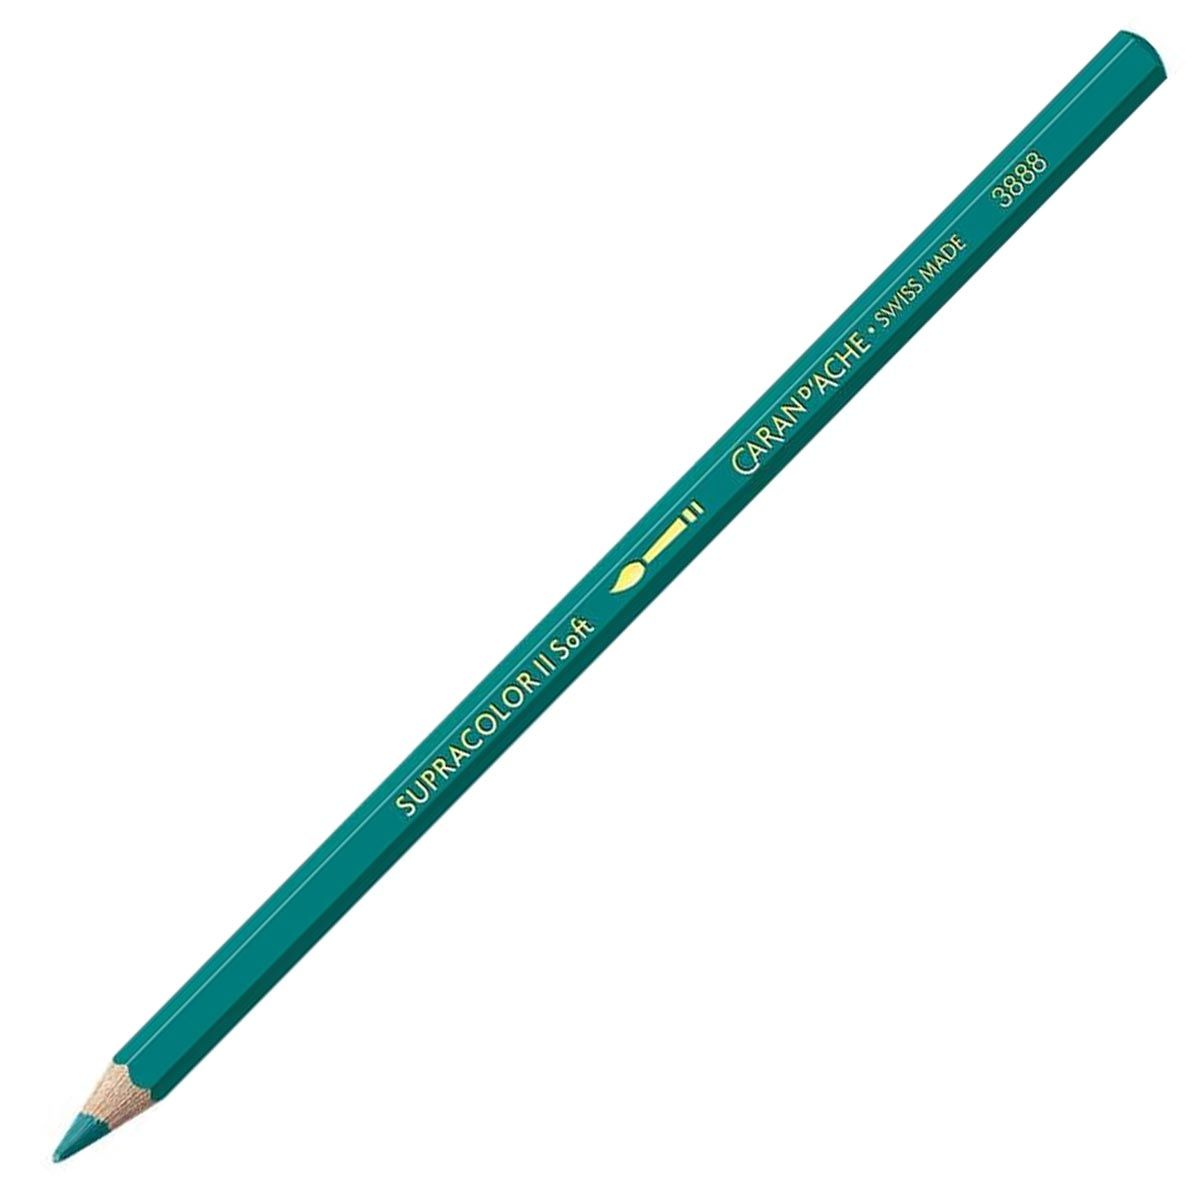 Caran d'Ache Supracolor ll Soft Aquarelle Pencil - Opaline Green 195